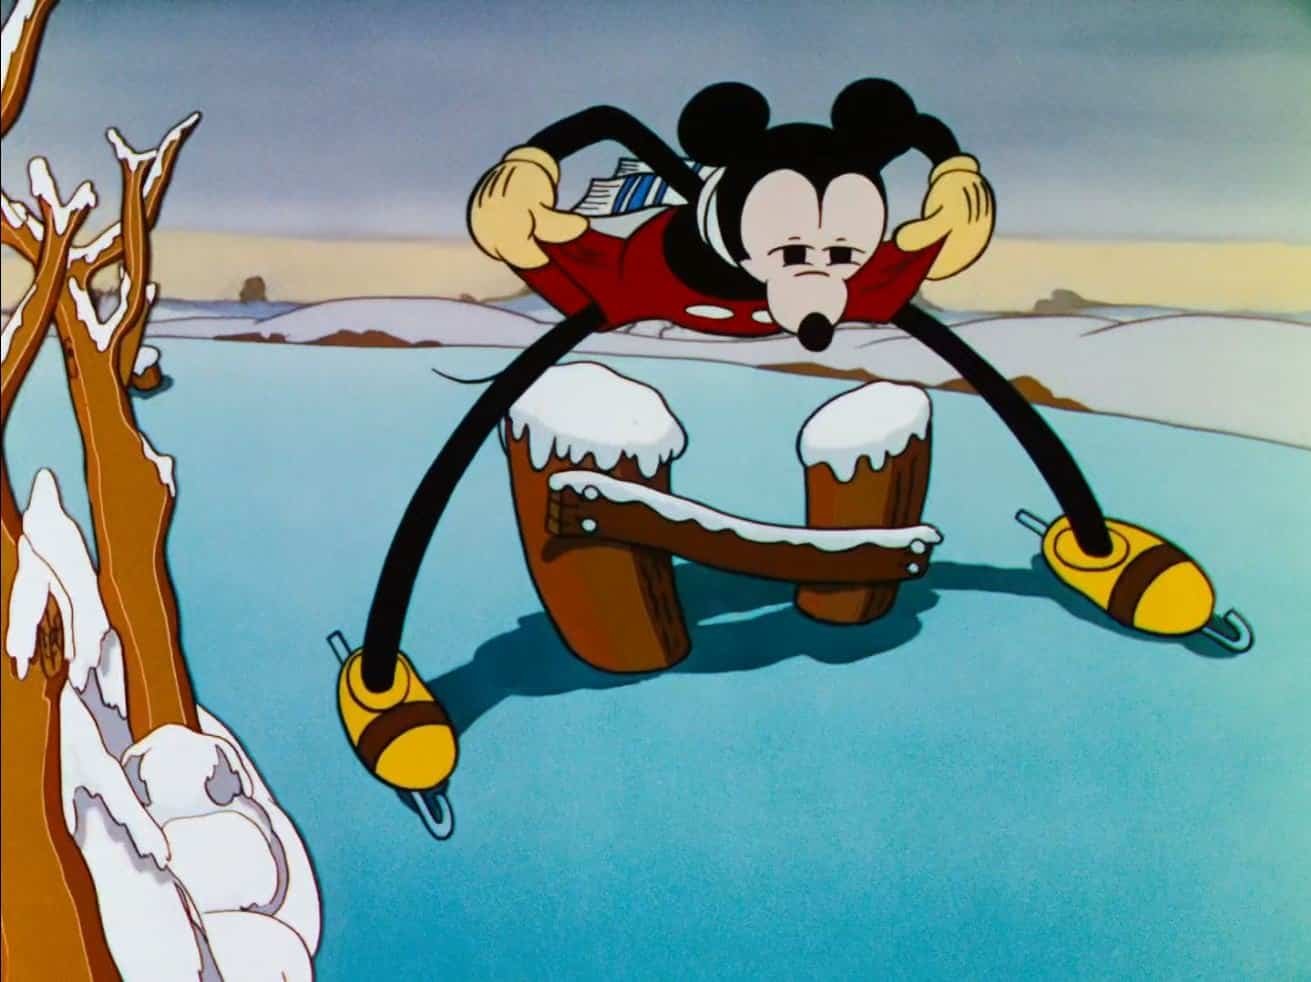 Mickey Mouse patine sur la glace, jambes écartées et bras tendus pour l'équilibre, avec un paysage hivernal en arrière-plan. La neige recouvre une partie du sol et des branches d'arbres.